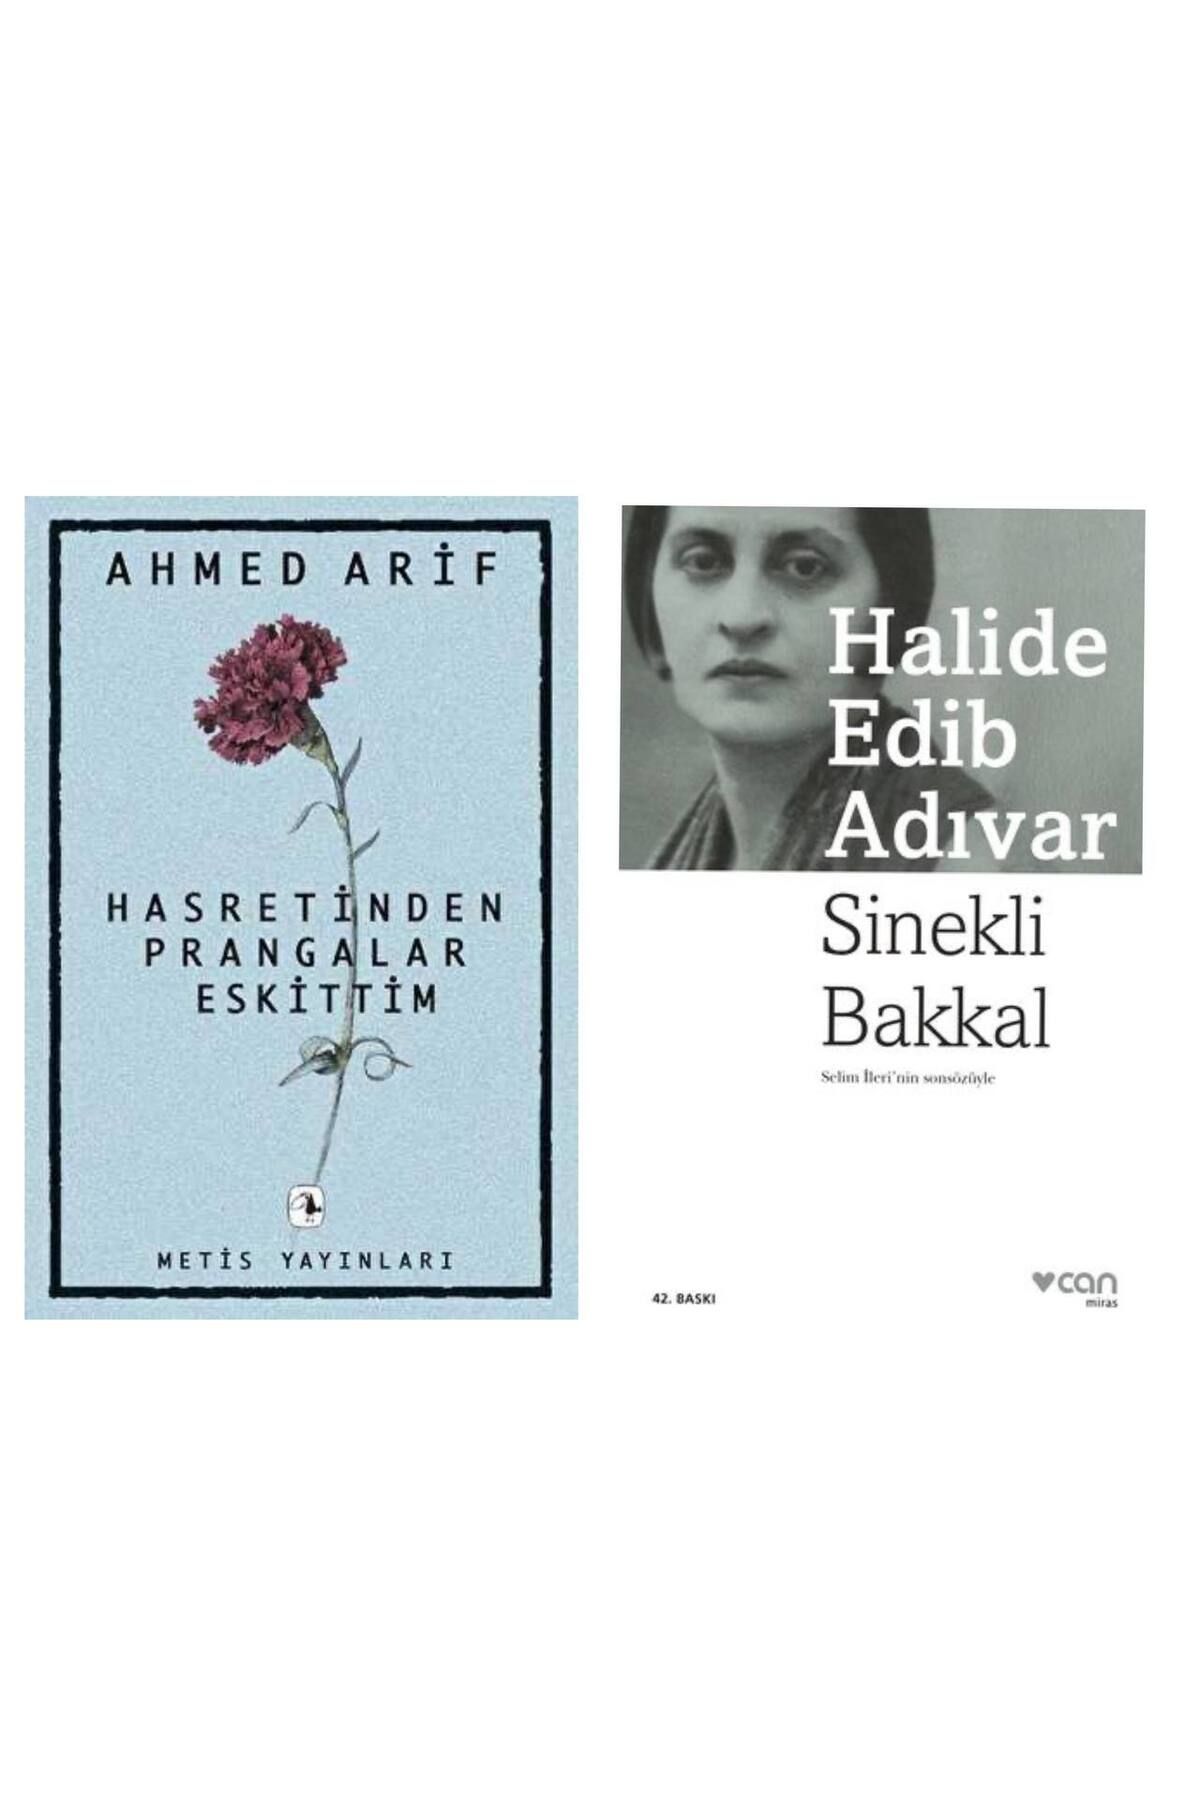 Metis Yayıncılık Hasretin Prangalar Eskittim - Ahmed Arif - Sinekli Bakkal - Halide Edib Adıvar